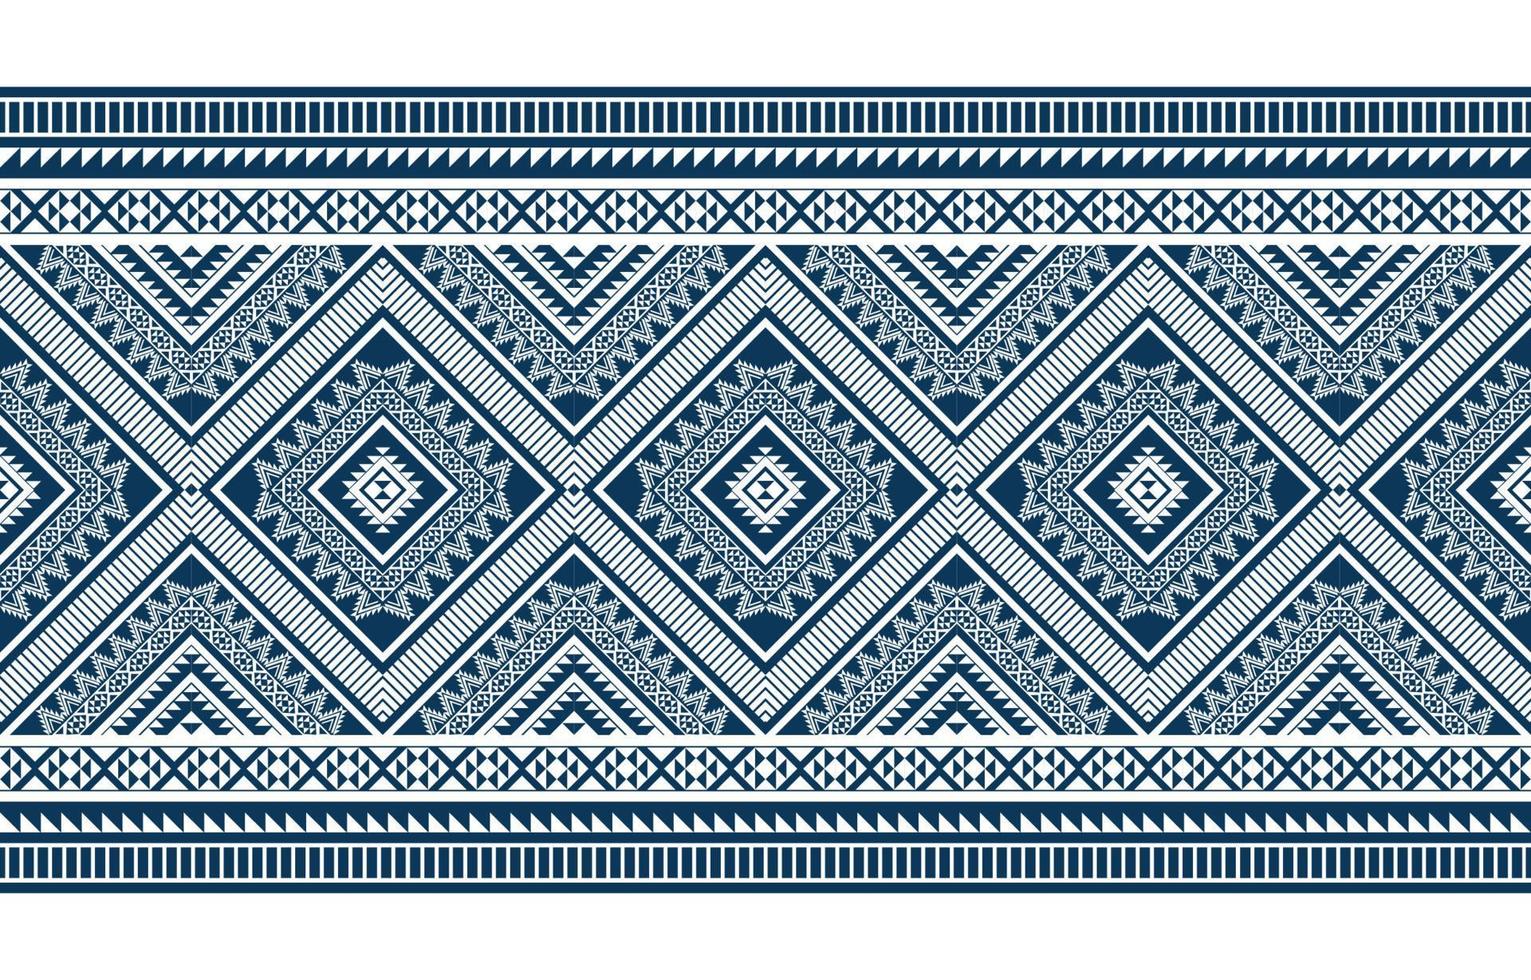 abstrato geométrico padrão étnico tradicional. estilo americano, mexicano. design para plano de fundo, ilustração, papel de parede, tecido, batik, tapete, vestuário, bordado vetor